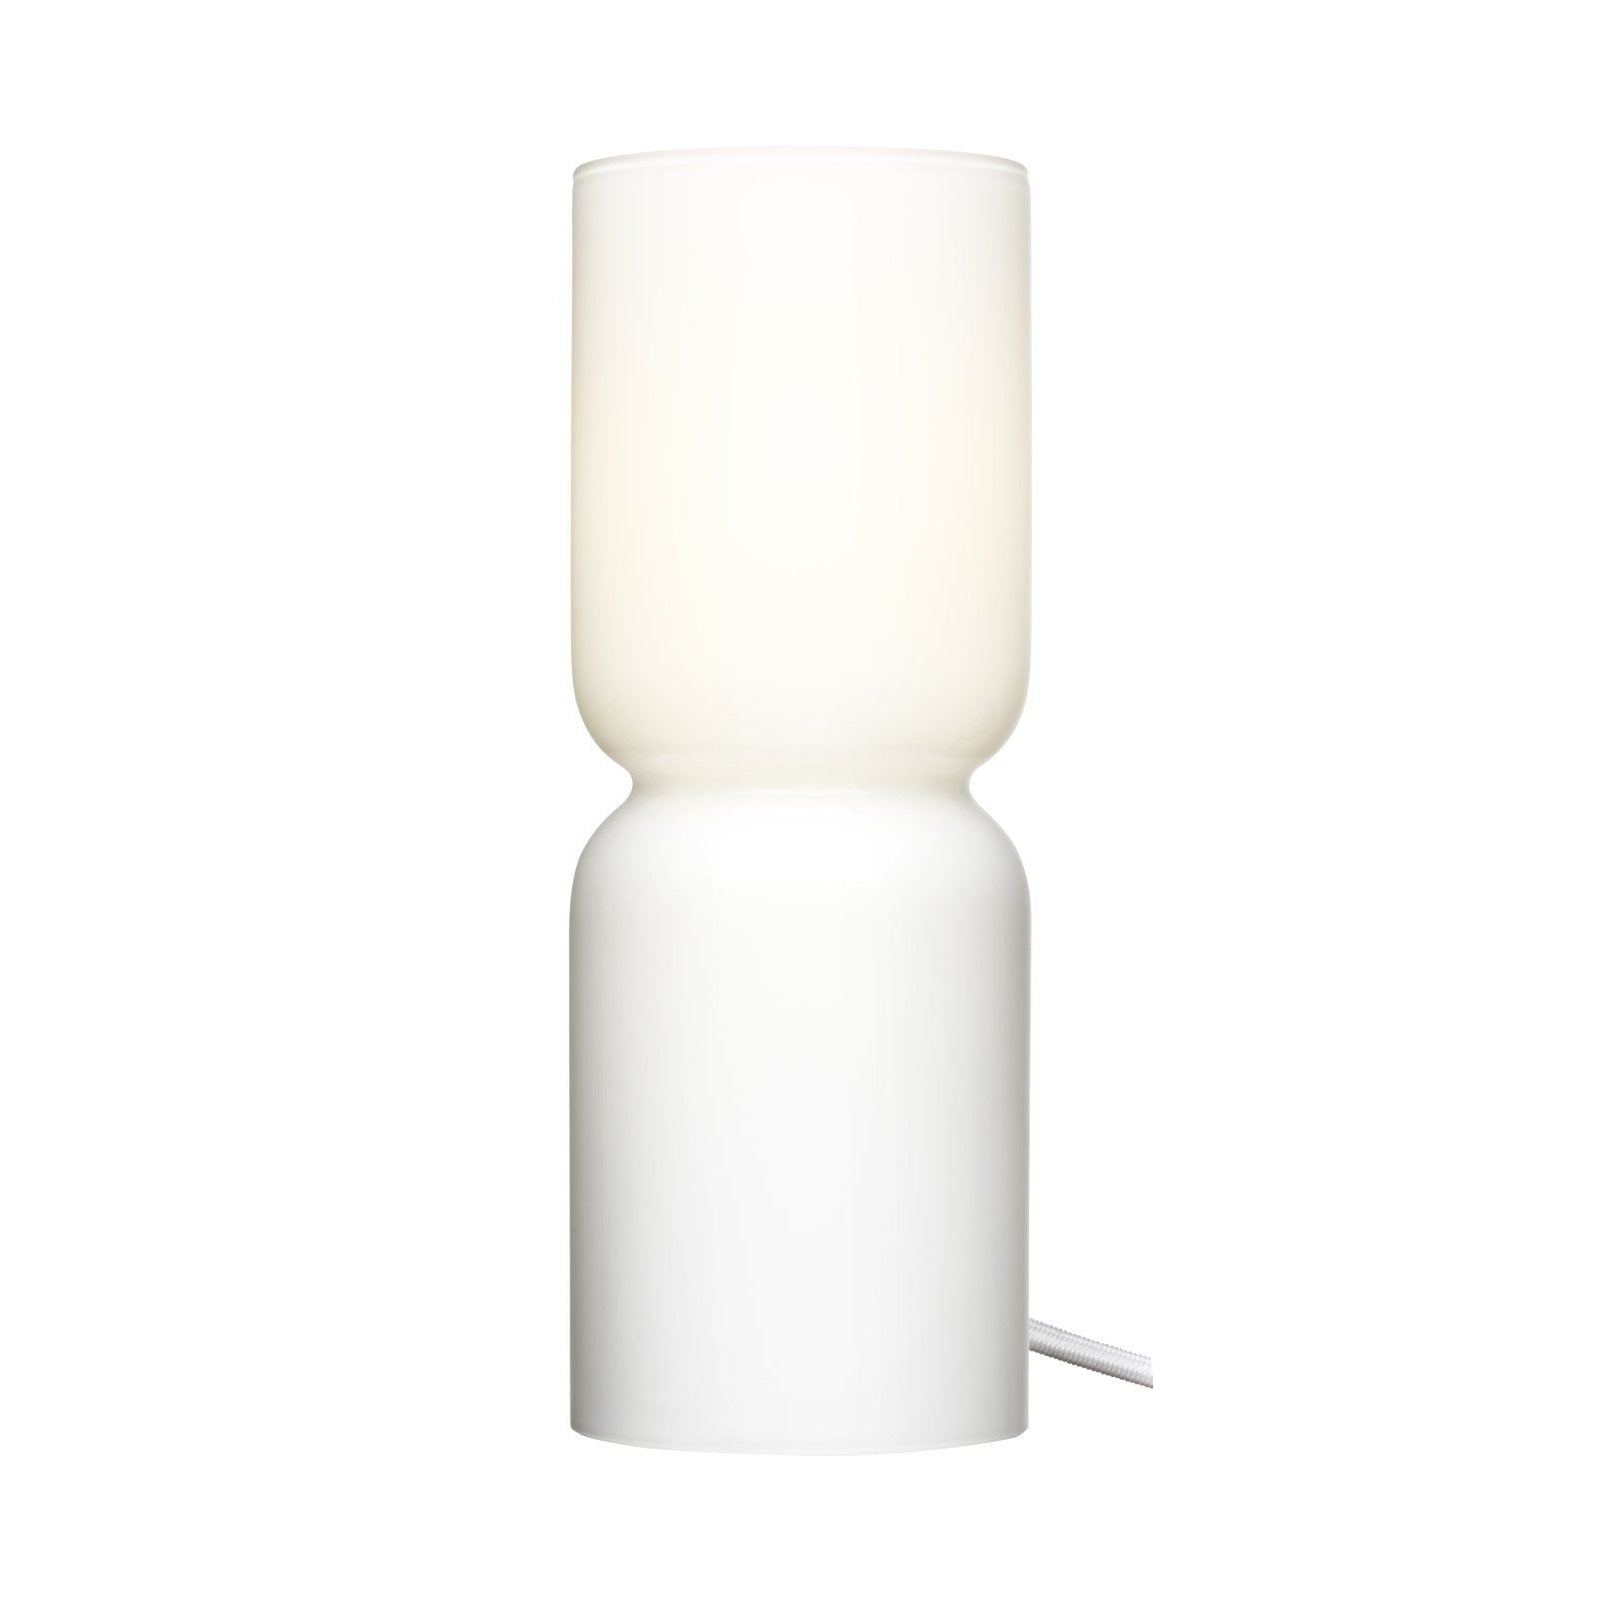 Ópal de lámpara de linterna Iittala, 25 cm